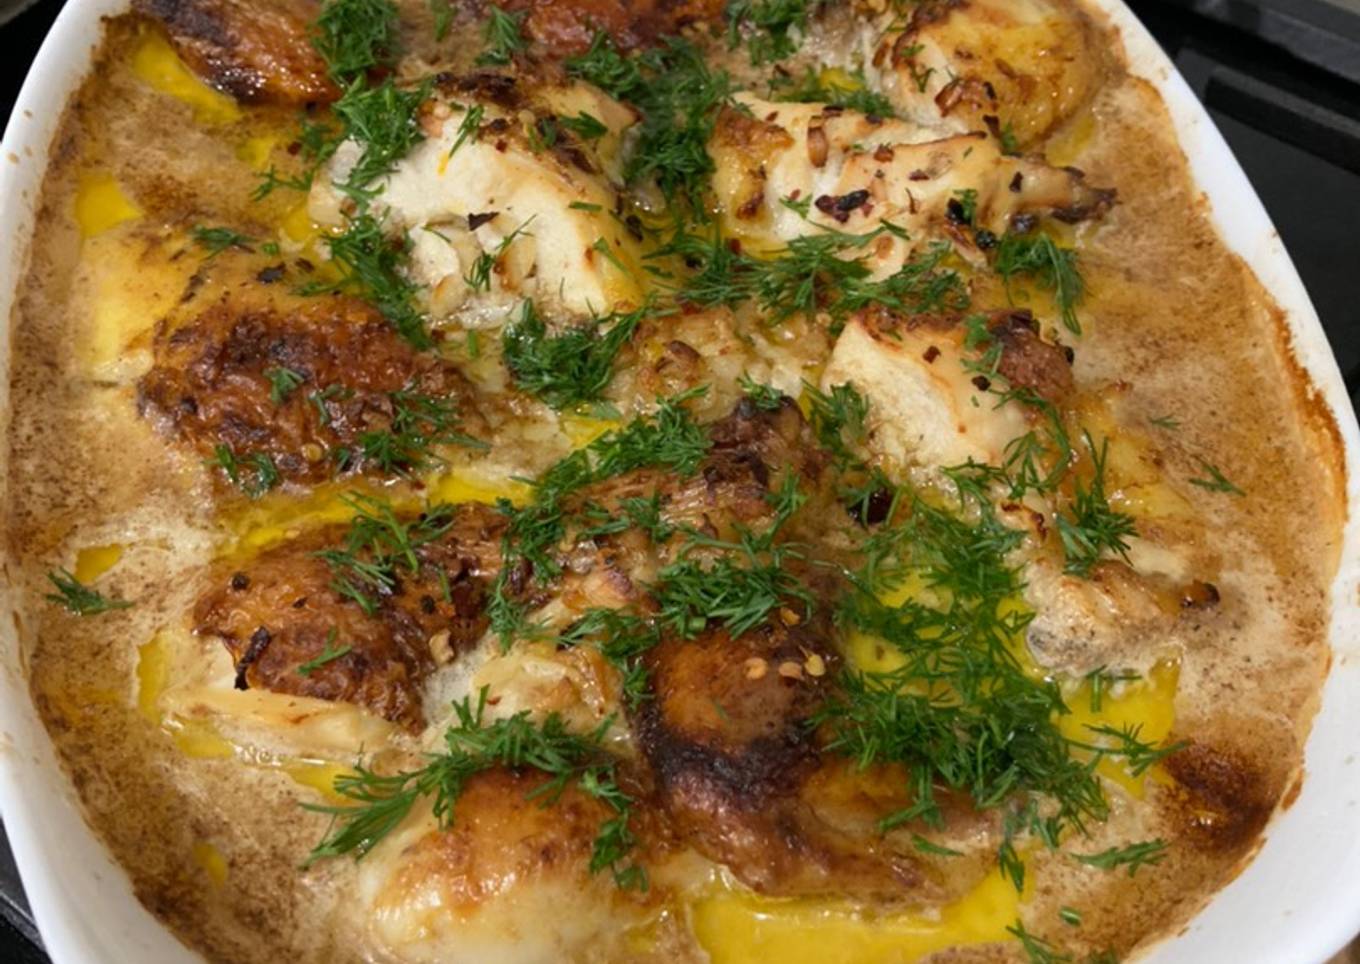 Shqmeruli - Georgian chicken with garlic 🧄